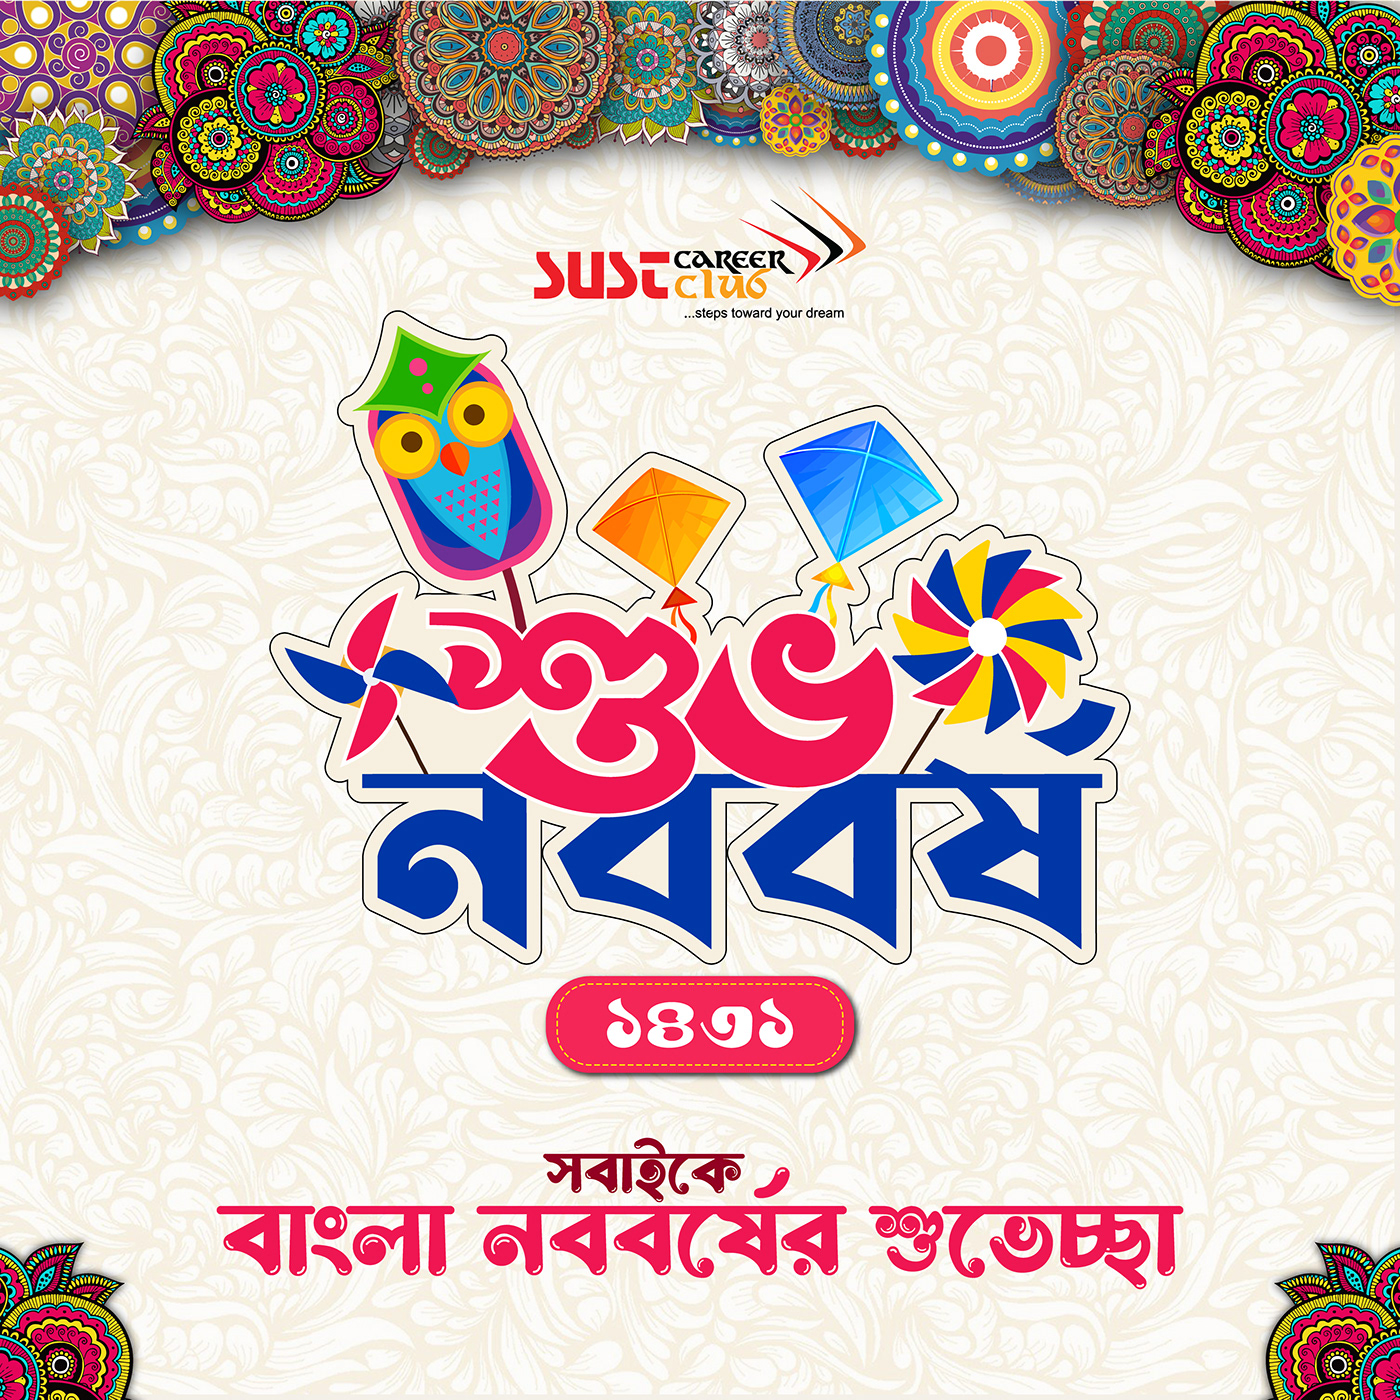 Pohela Boishak bangla new year পহেলা বৈশাখ Pohela Boishakh قصة الموكا Bengali New Year 메이저사이트 ガチャポン Bangla festival